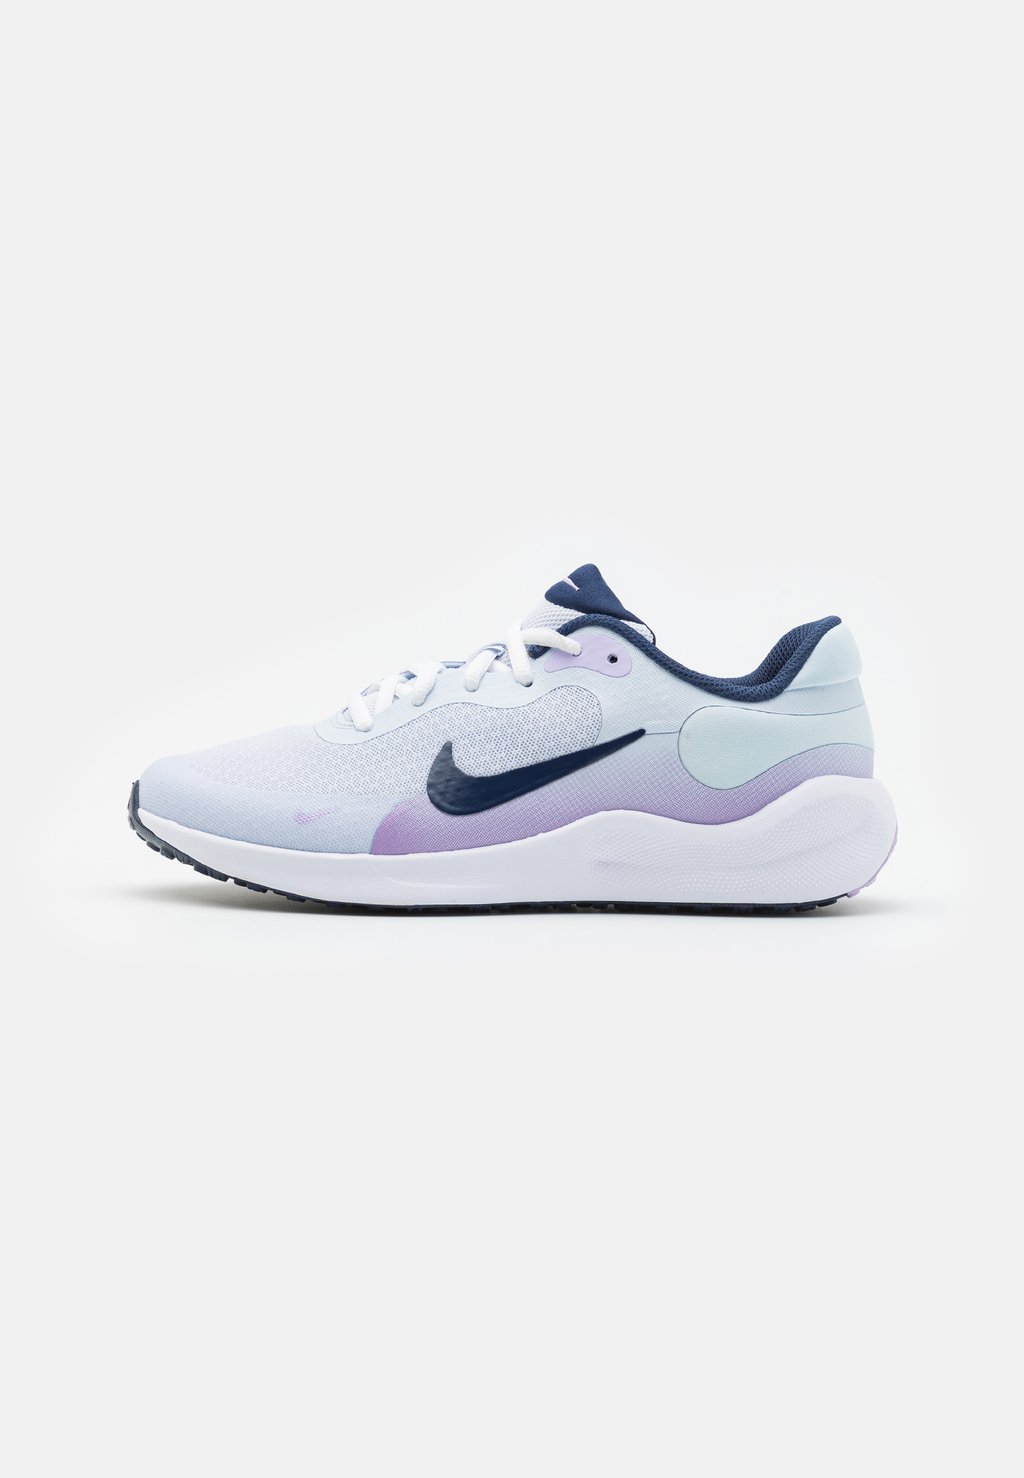 цена Нейтральные кроссовки REVOLUTION 7 UNISEX Nike, цвет football grey/midnight navy/lilac bloom/lilac